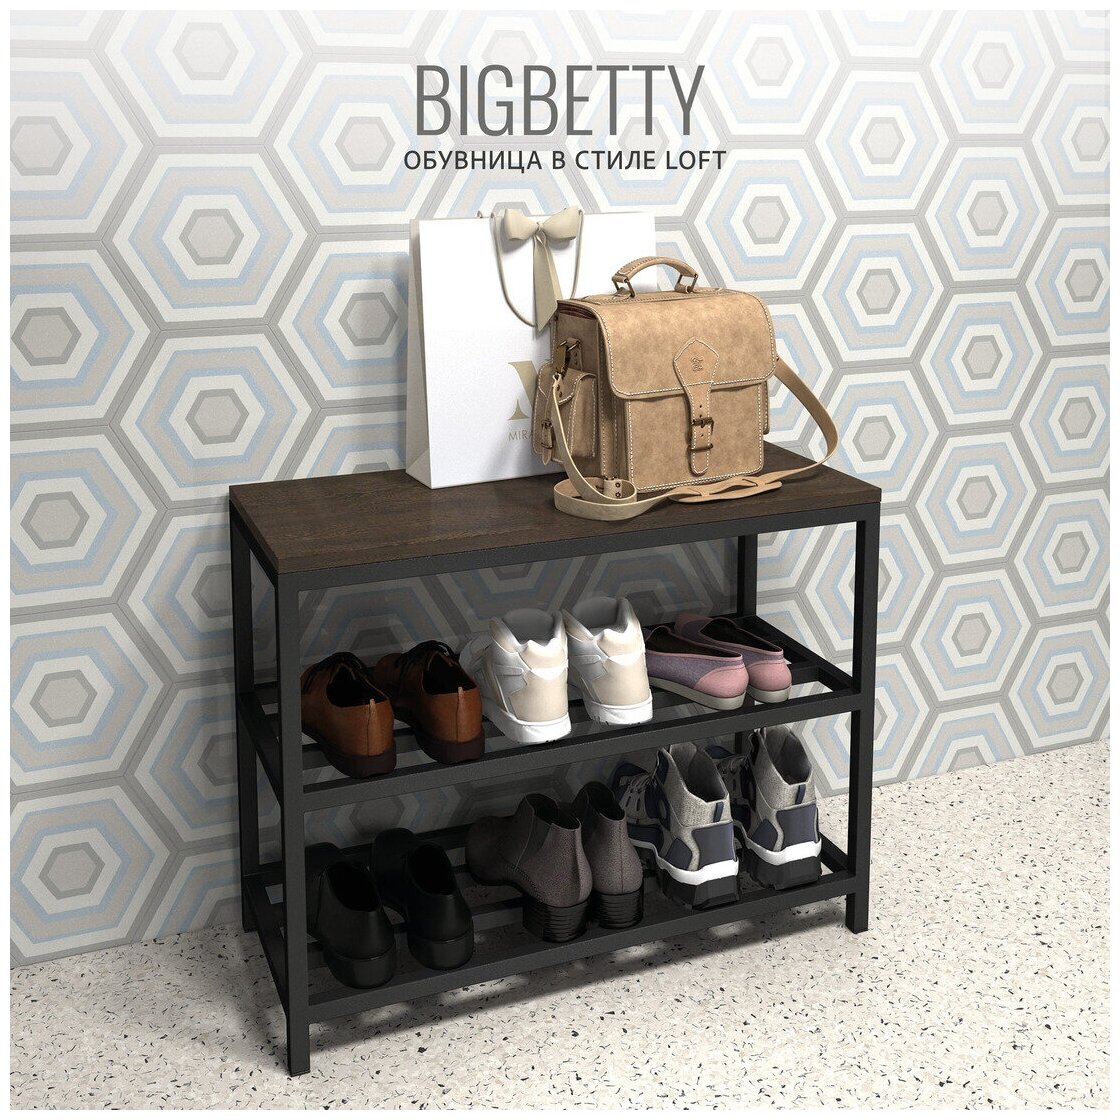 Обувница BigBetty loft